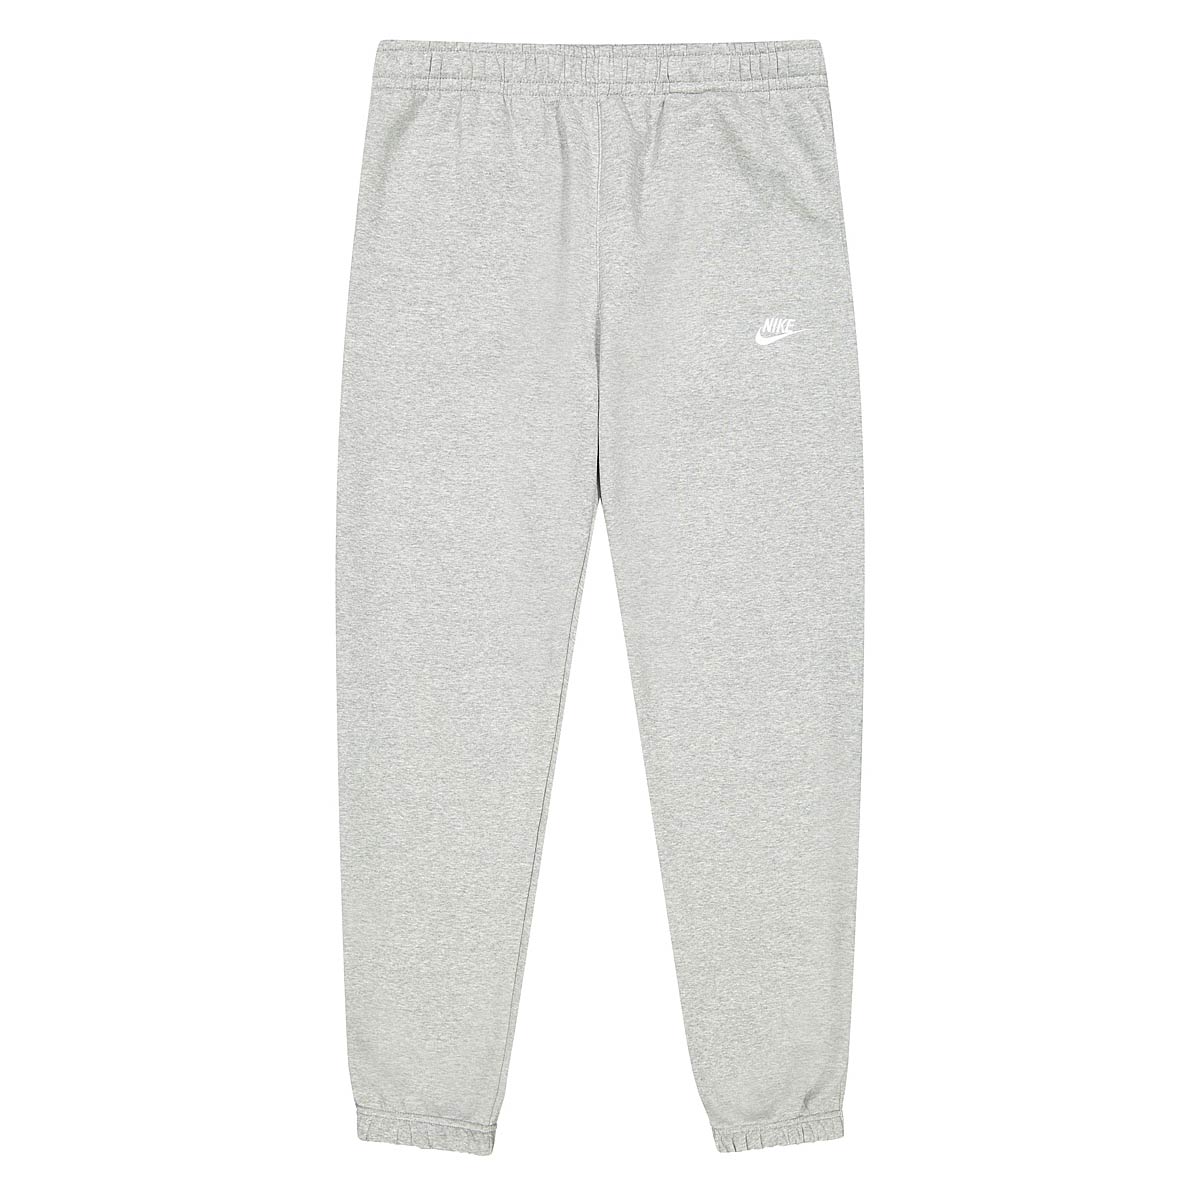 Nike Nsw Club Fleece Pants, Dk Grey Heather/Matte Silver/White